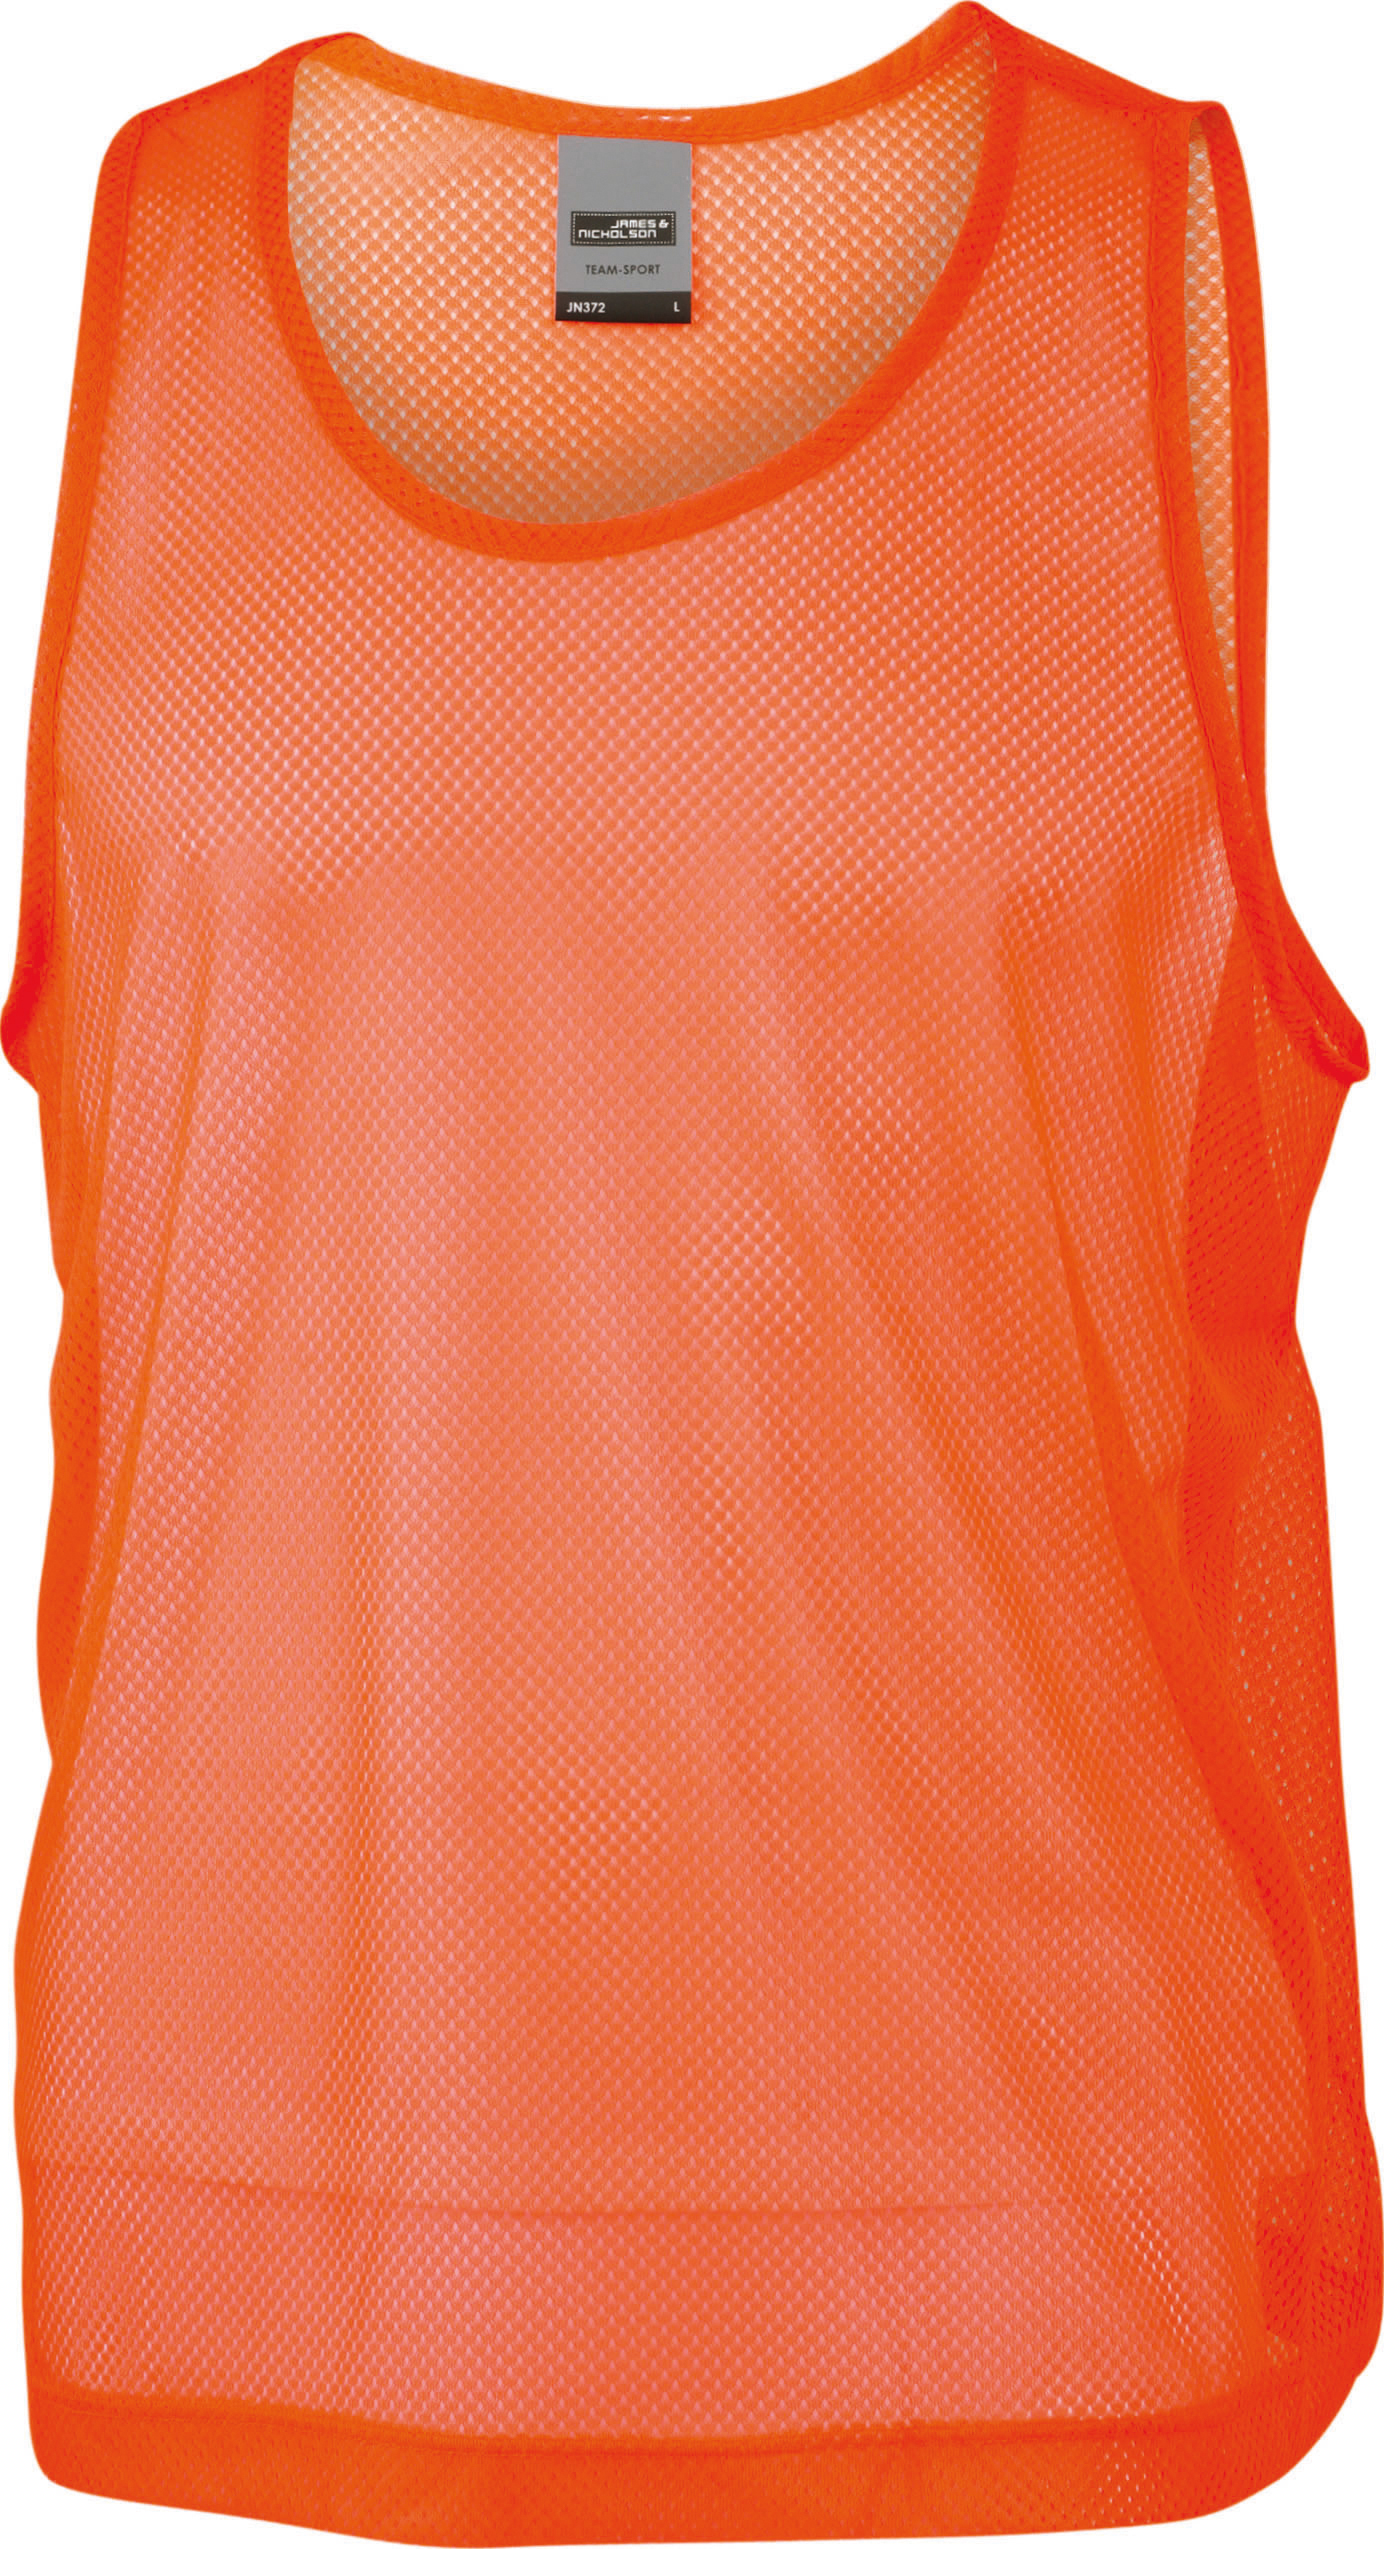 Týmový rozlišovací dres JN 372 Barva: oranžová, Velikost: S